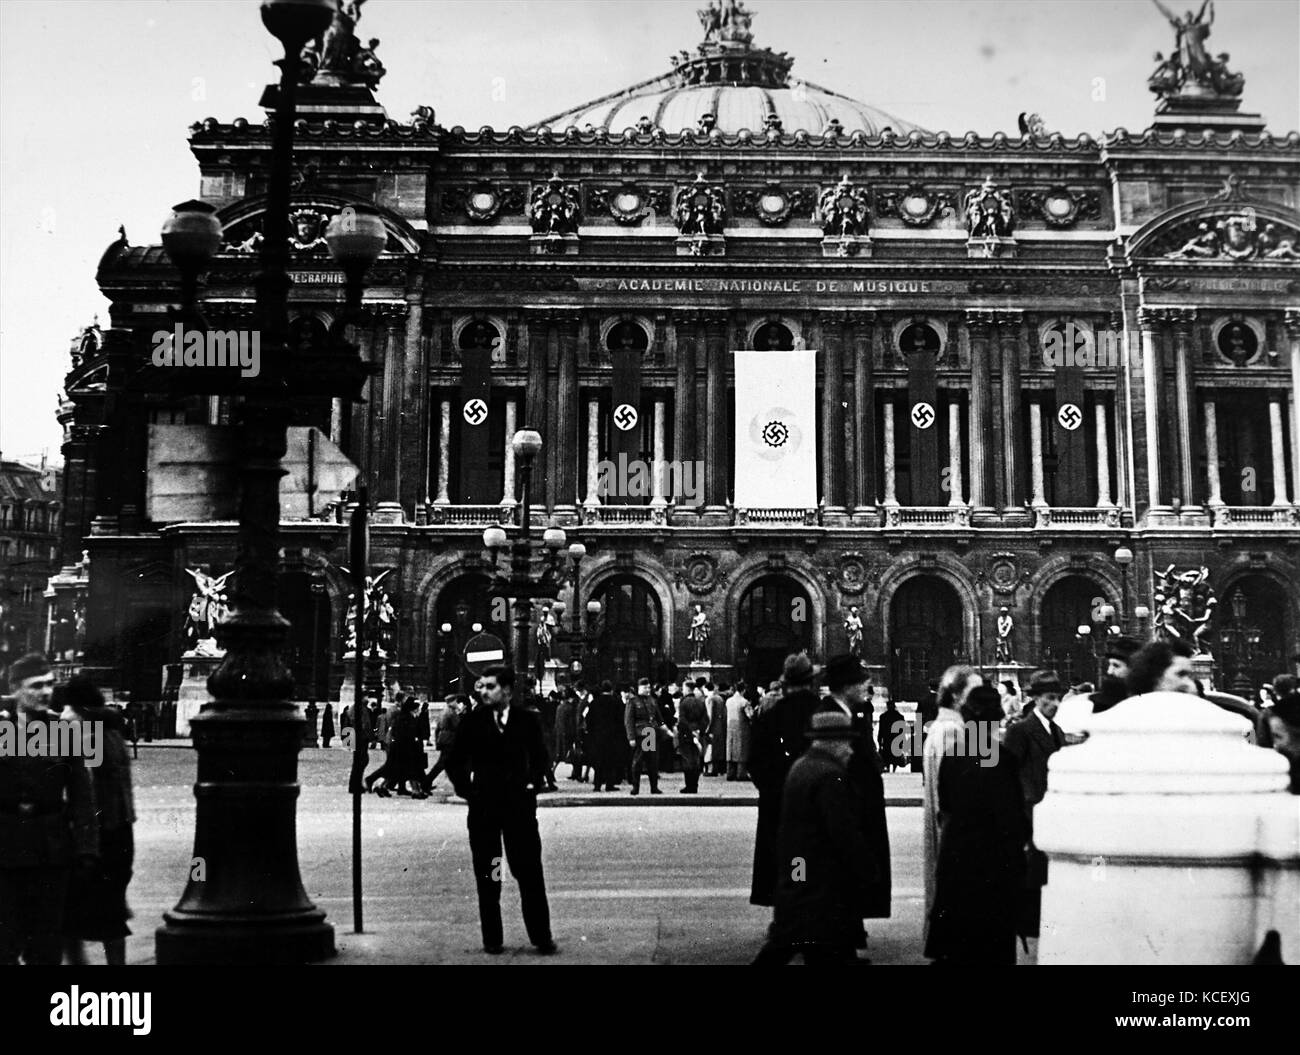 Fotografía de banderas nazis colgando de la Ópera de París, durante la ocupación alemana de Francia, en la Segunda Guerra Mundial. Fecha Siglo XX Foto de stock